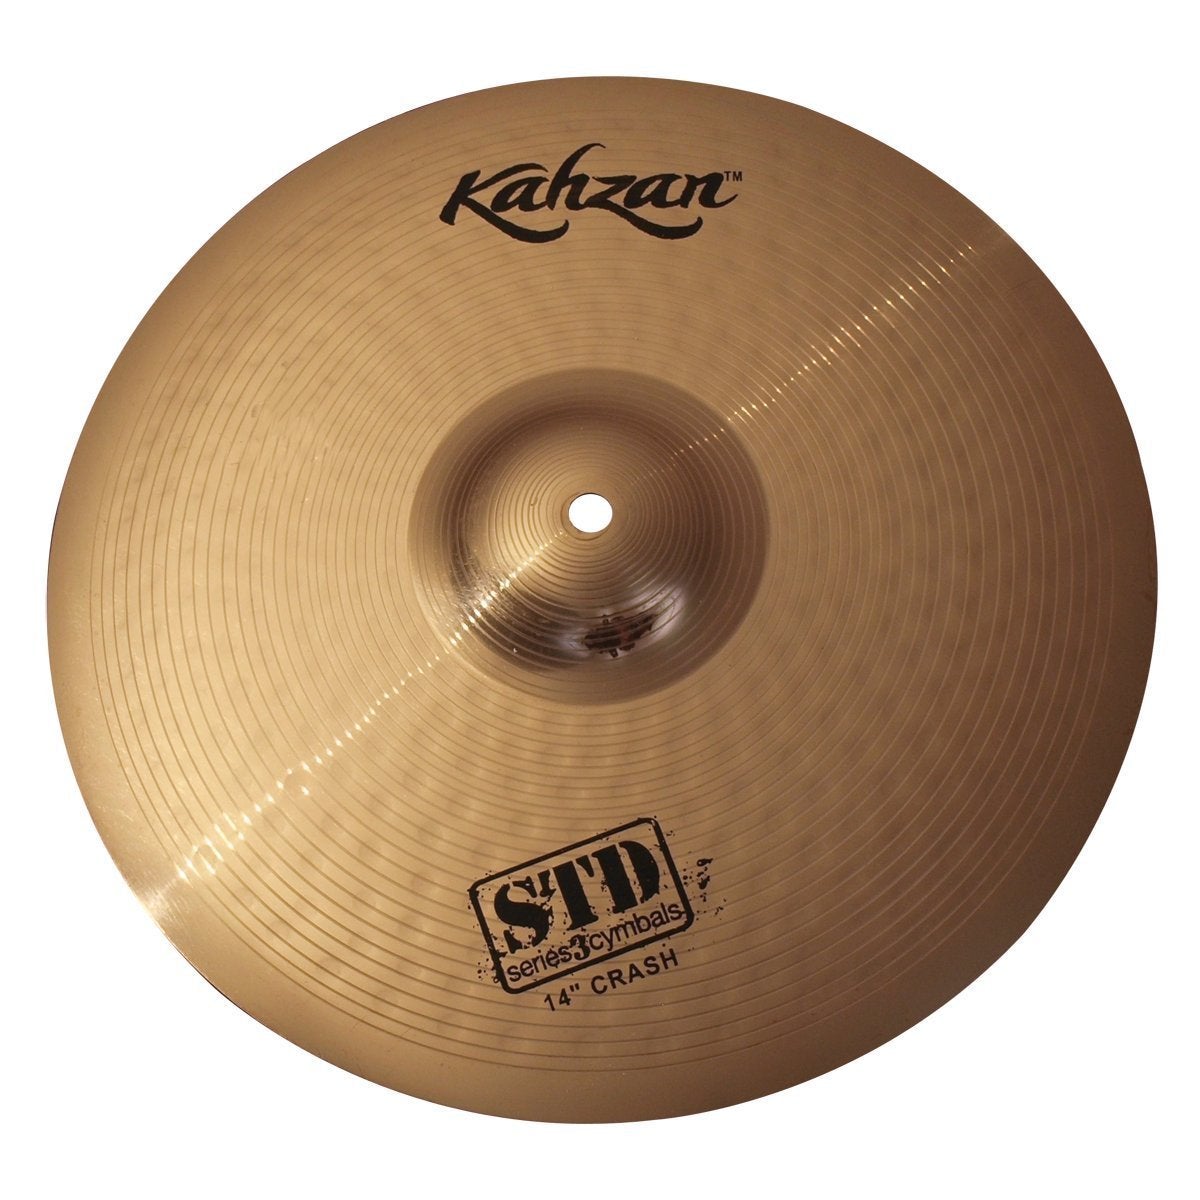 Kahzan 'STD-3 Series' Crash Cymbal (14")